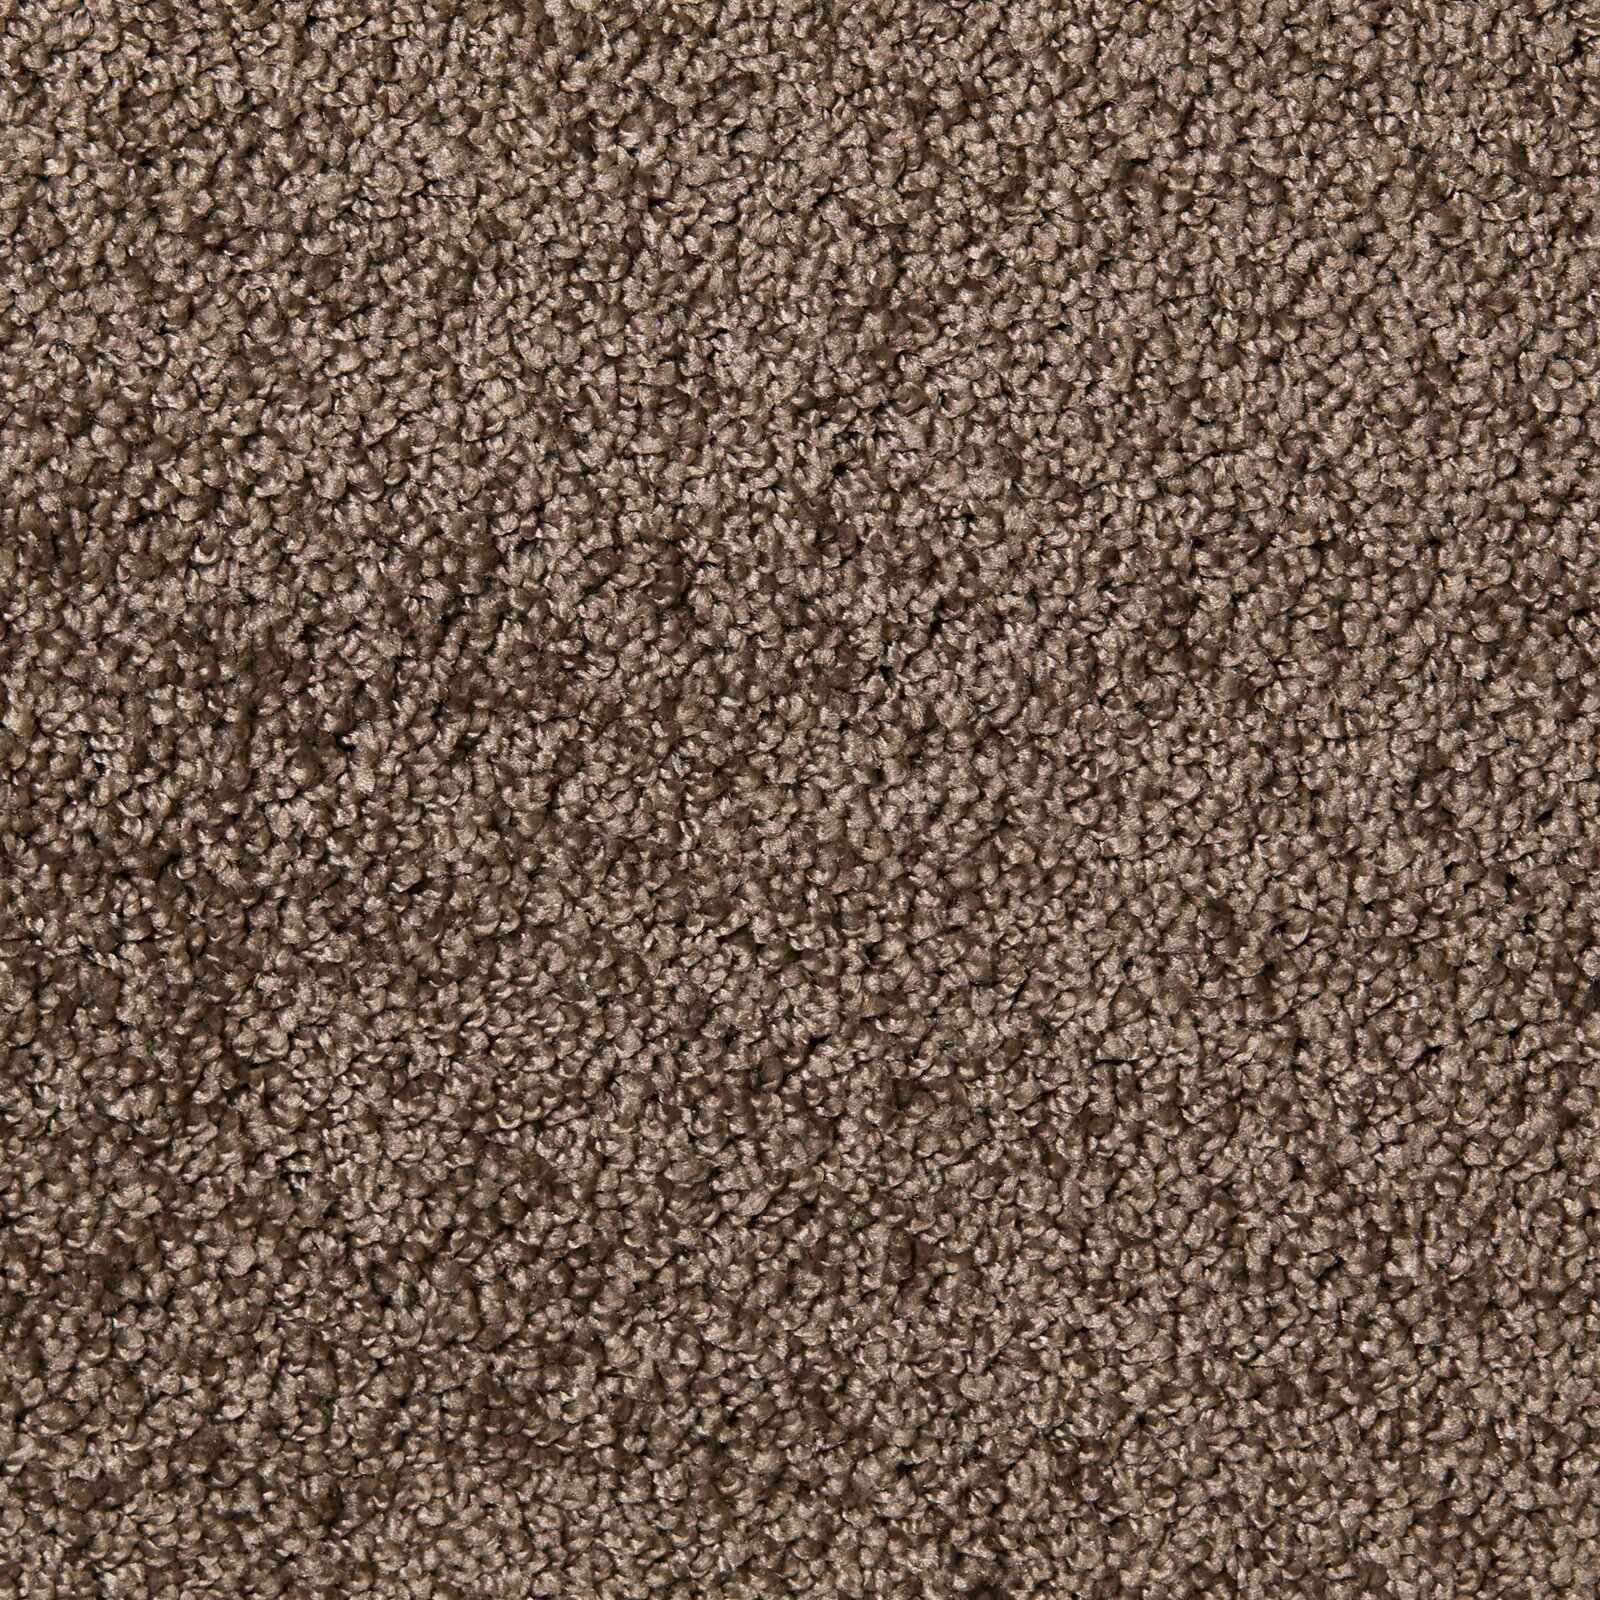 Teppichboden - grau - 4 Meter breit